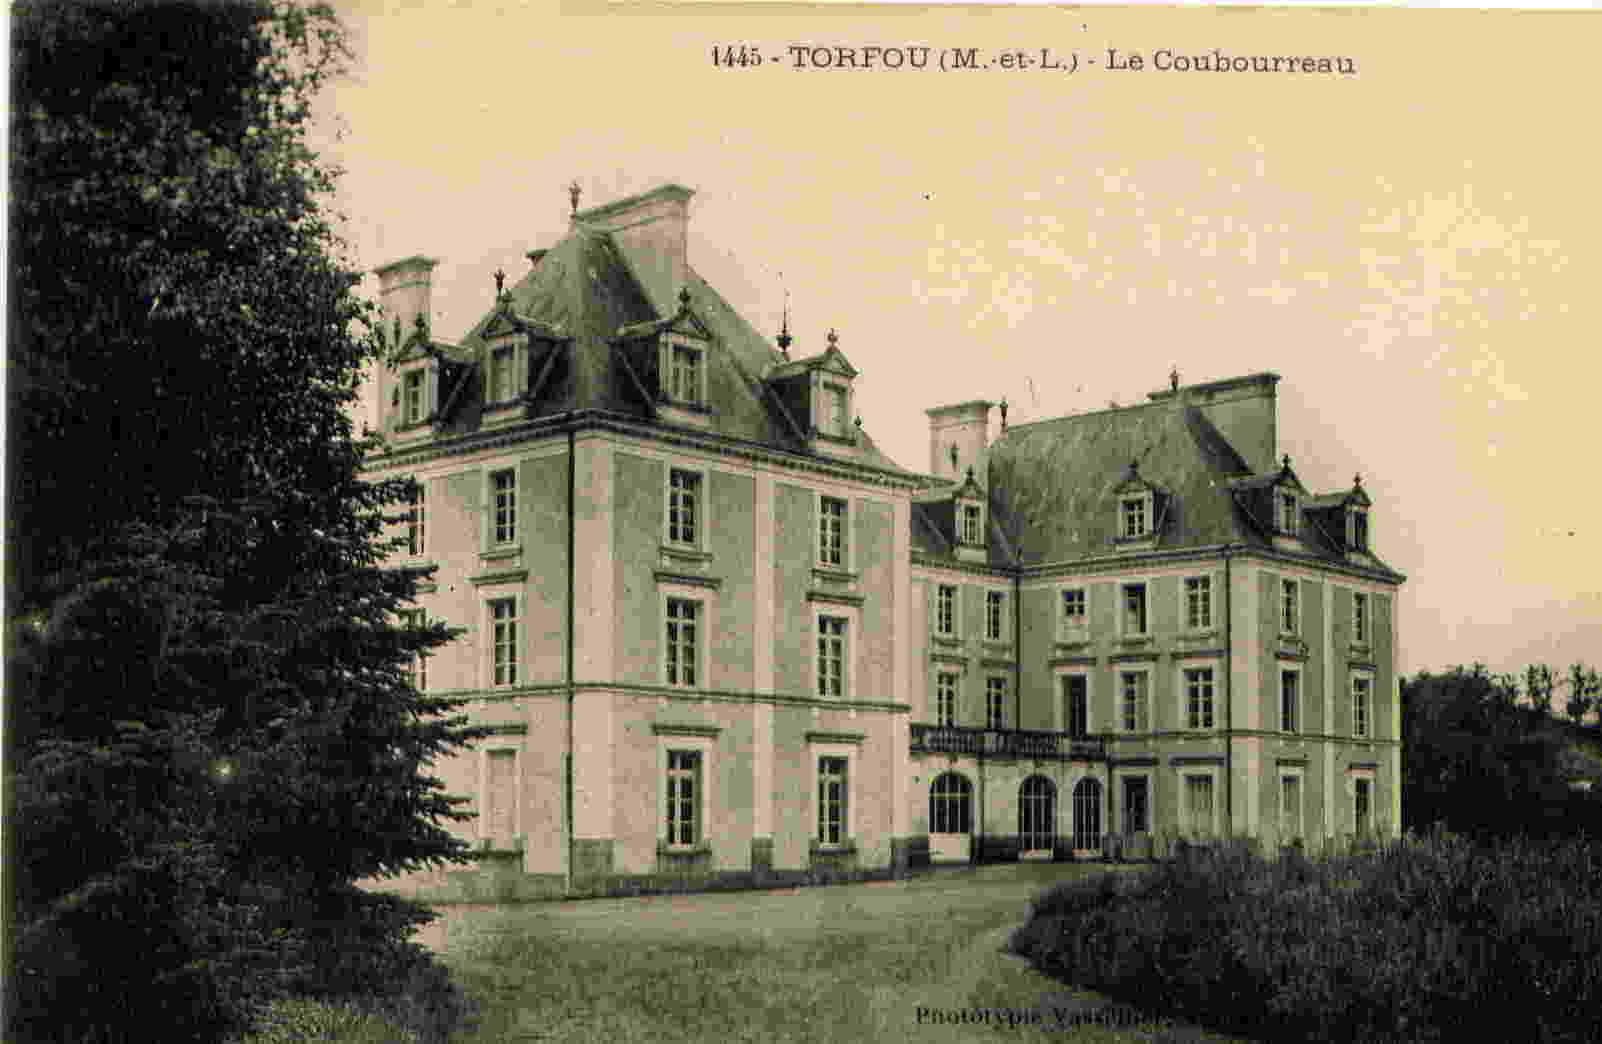 1445 - Torfou - Le Coubourreau - Montfaucon